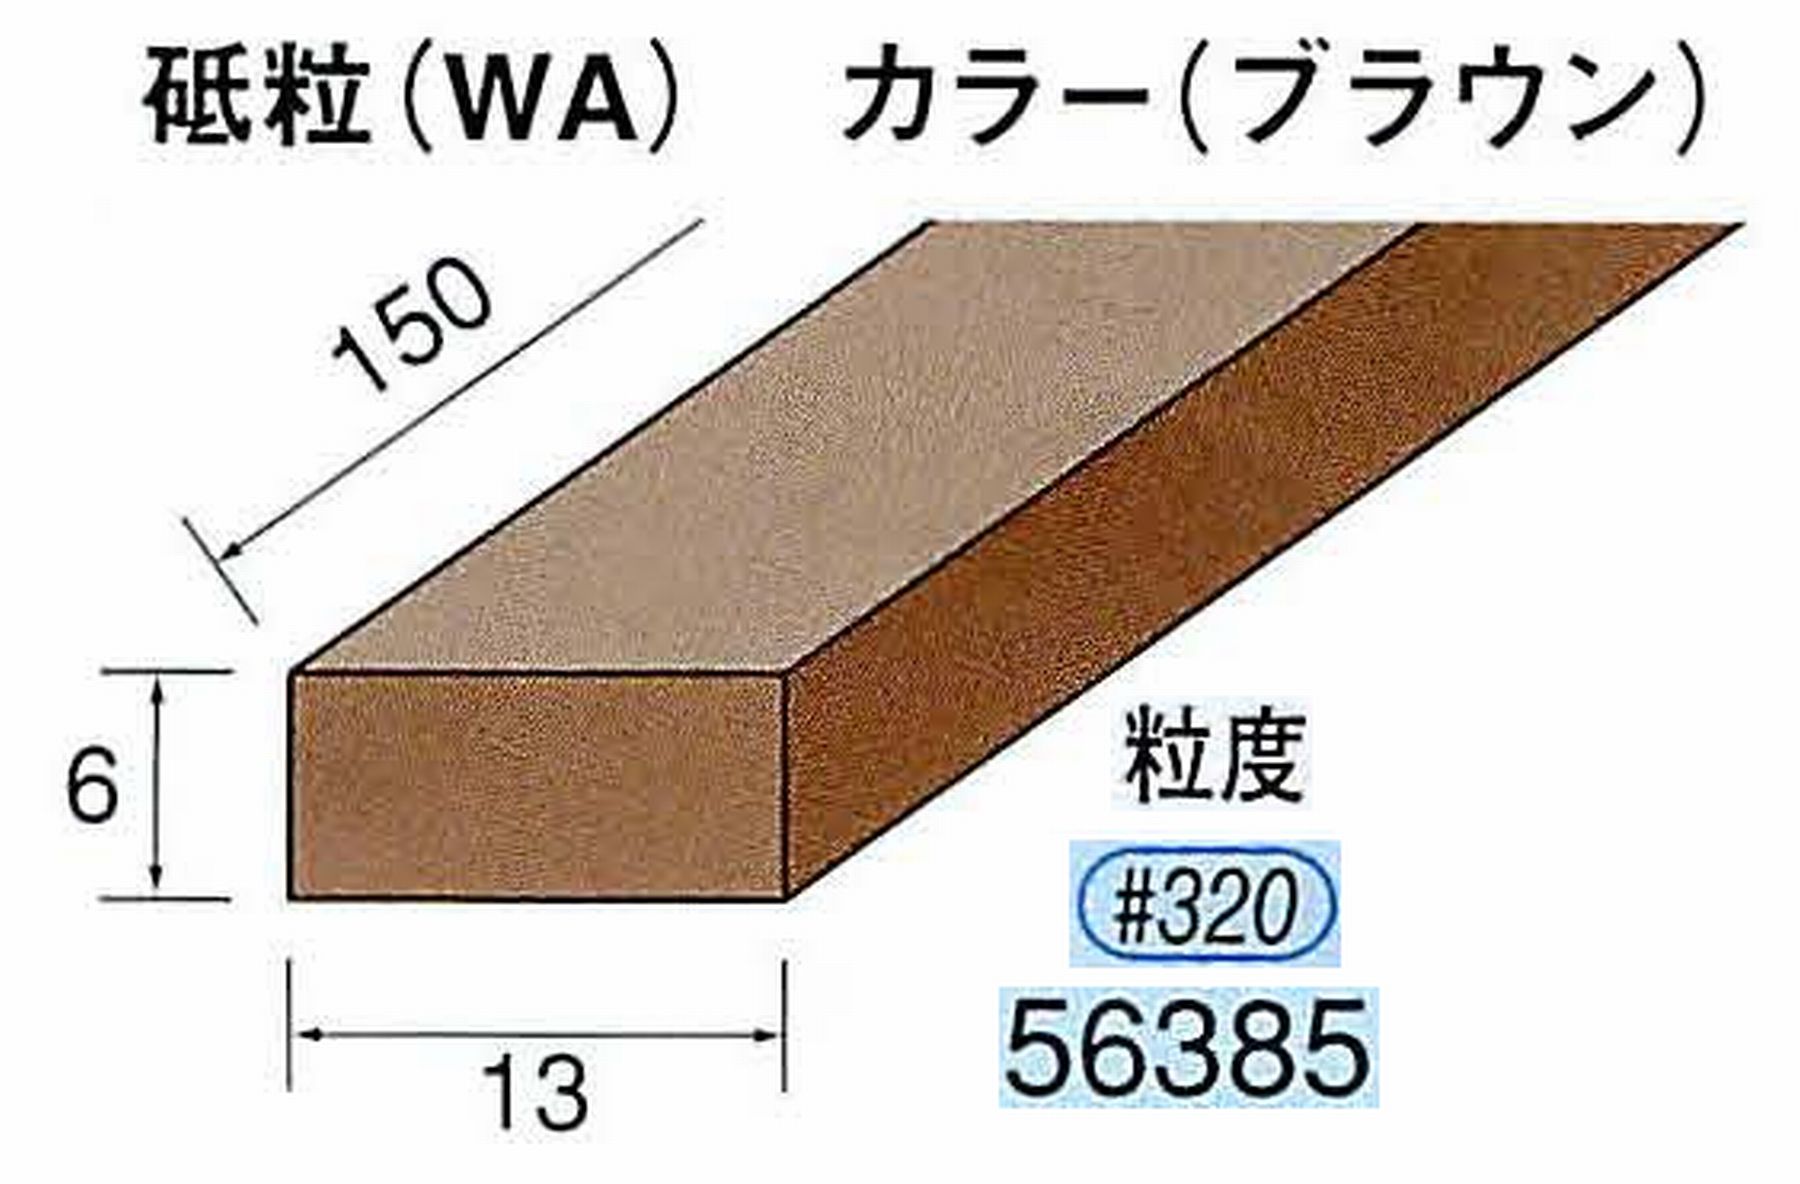 ナカニシ/NAKANISHI スティック砥石 ブラウン・フィニッシュシリーズ 砥粒(WA) 56385